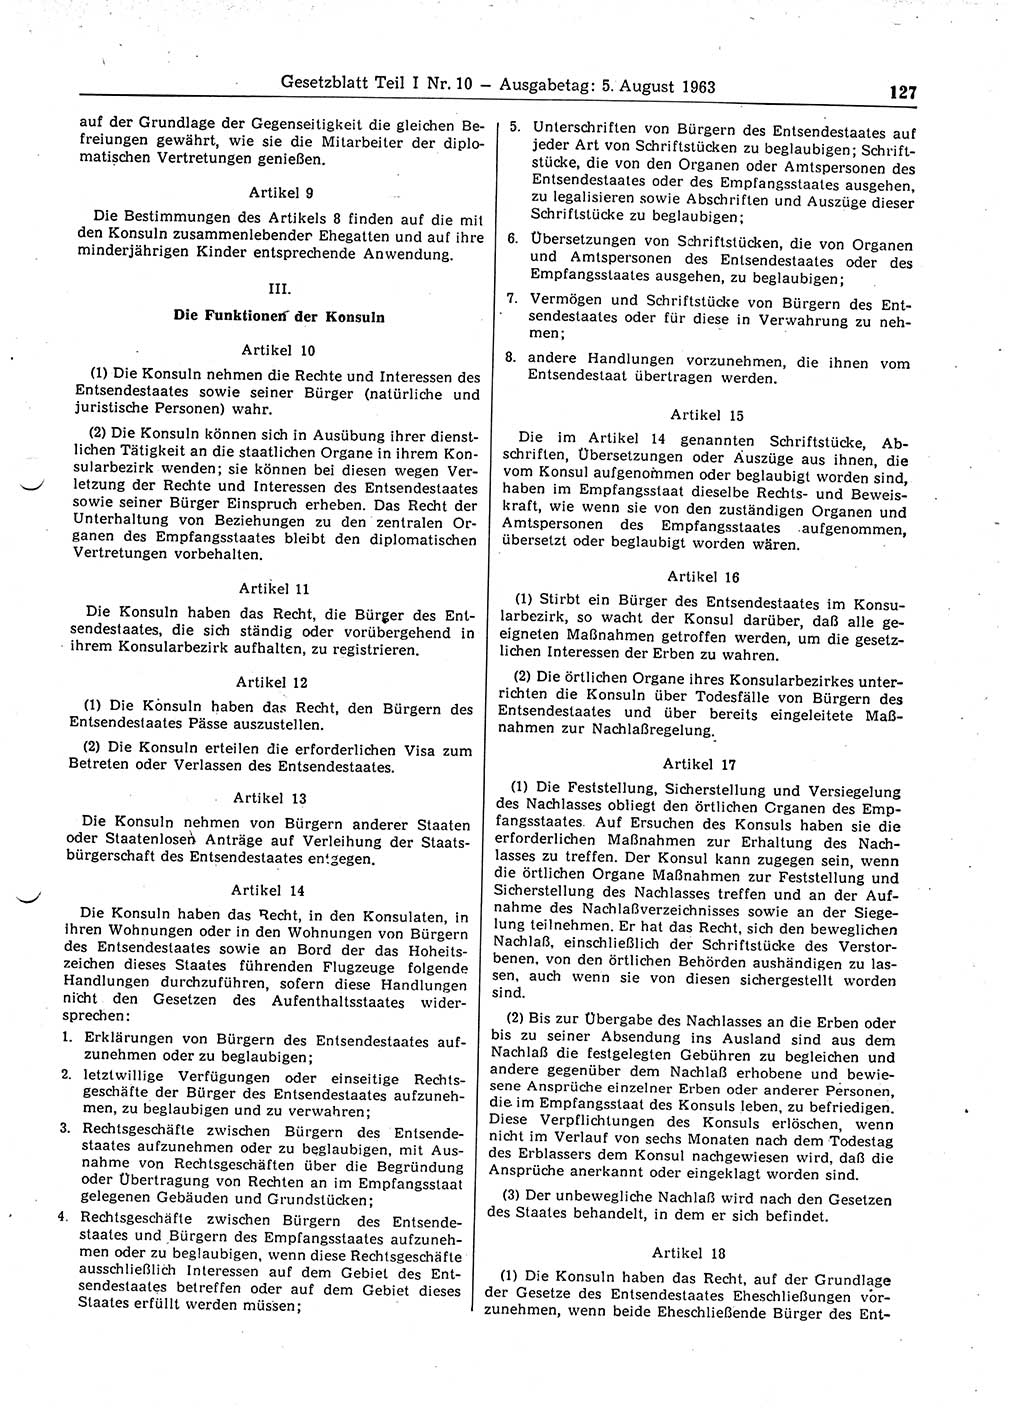 Gesetzblatt (GBl.) der Deutschen Demokratischen Republik (DDR) Teil Ⅰ 1963, Seite 127 (GBl. DDR Ⅰ 1963, S. 127)